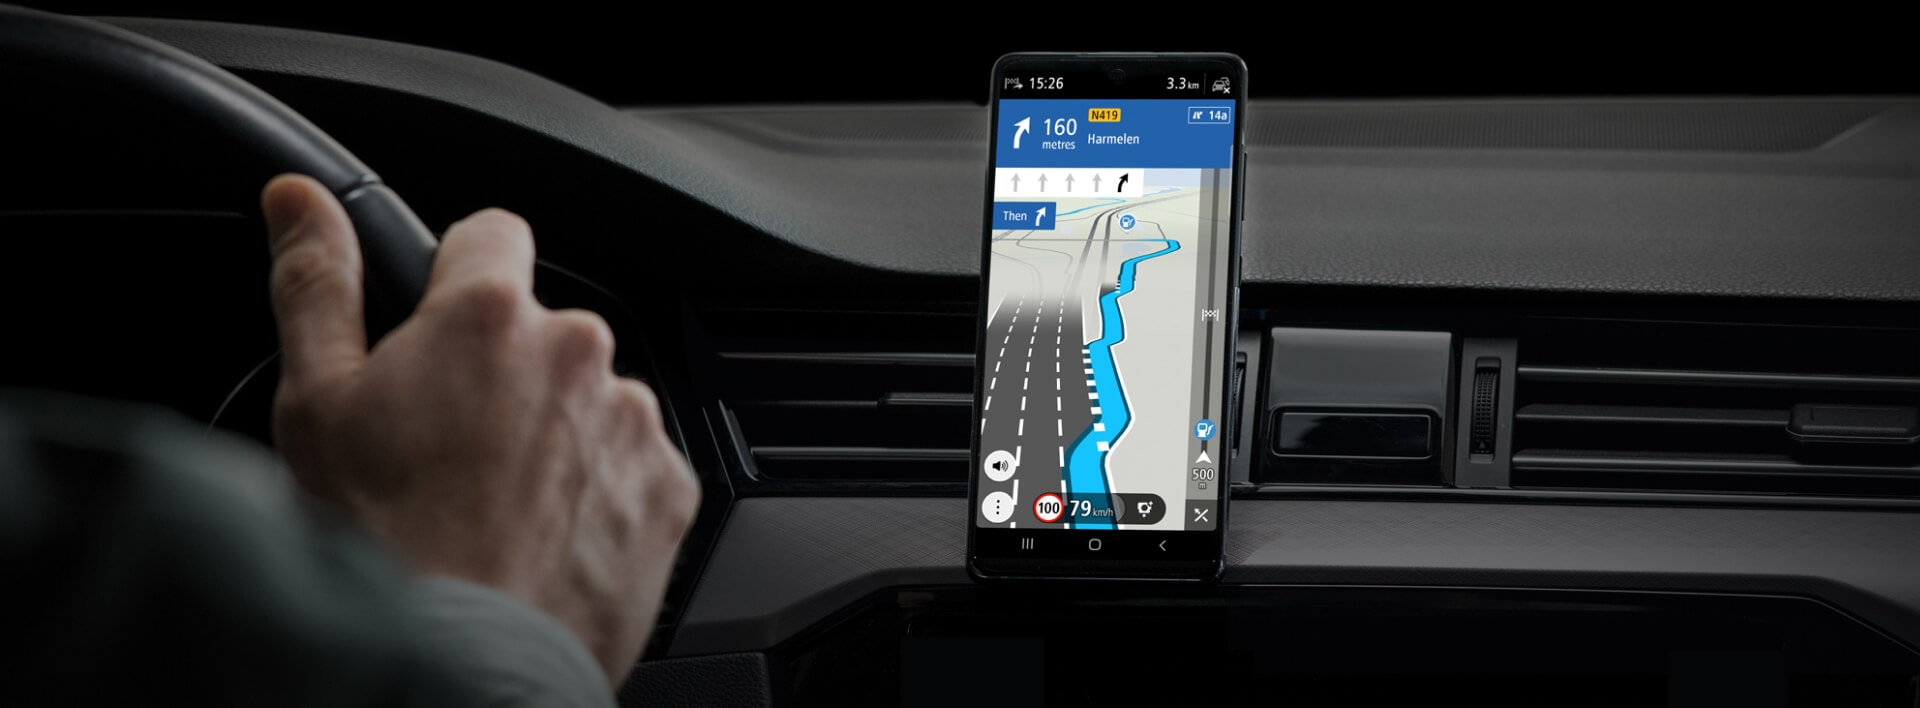 Yhteensopiva Android Auton ja Apple CarPlayn kanssa.